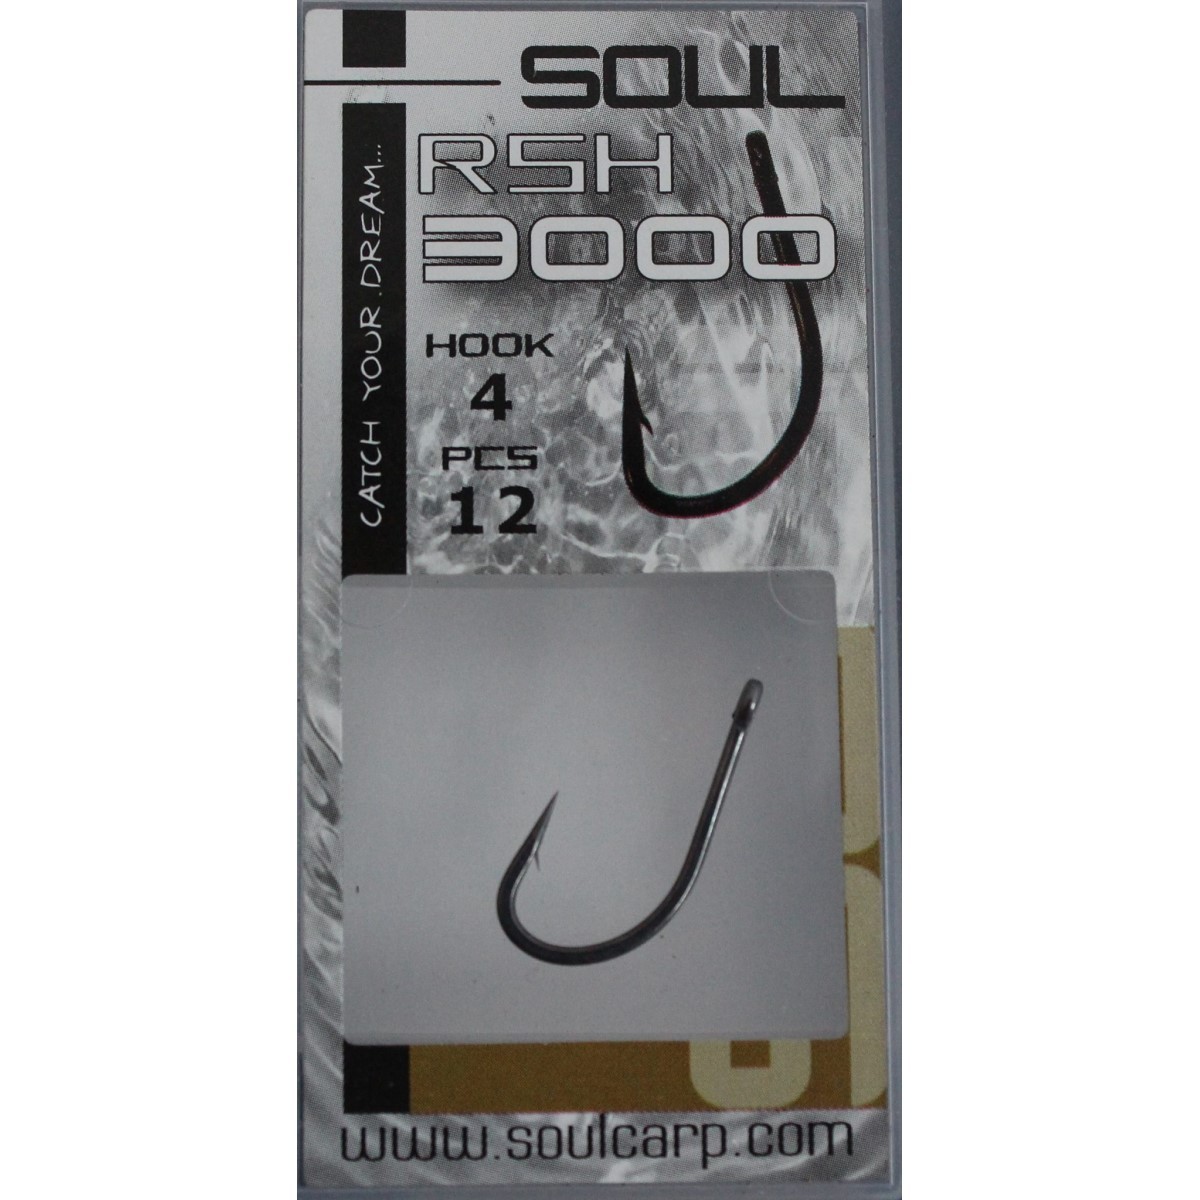 Soul RSH 3000